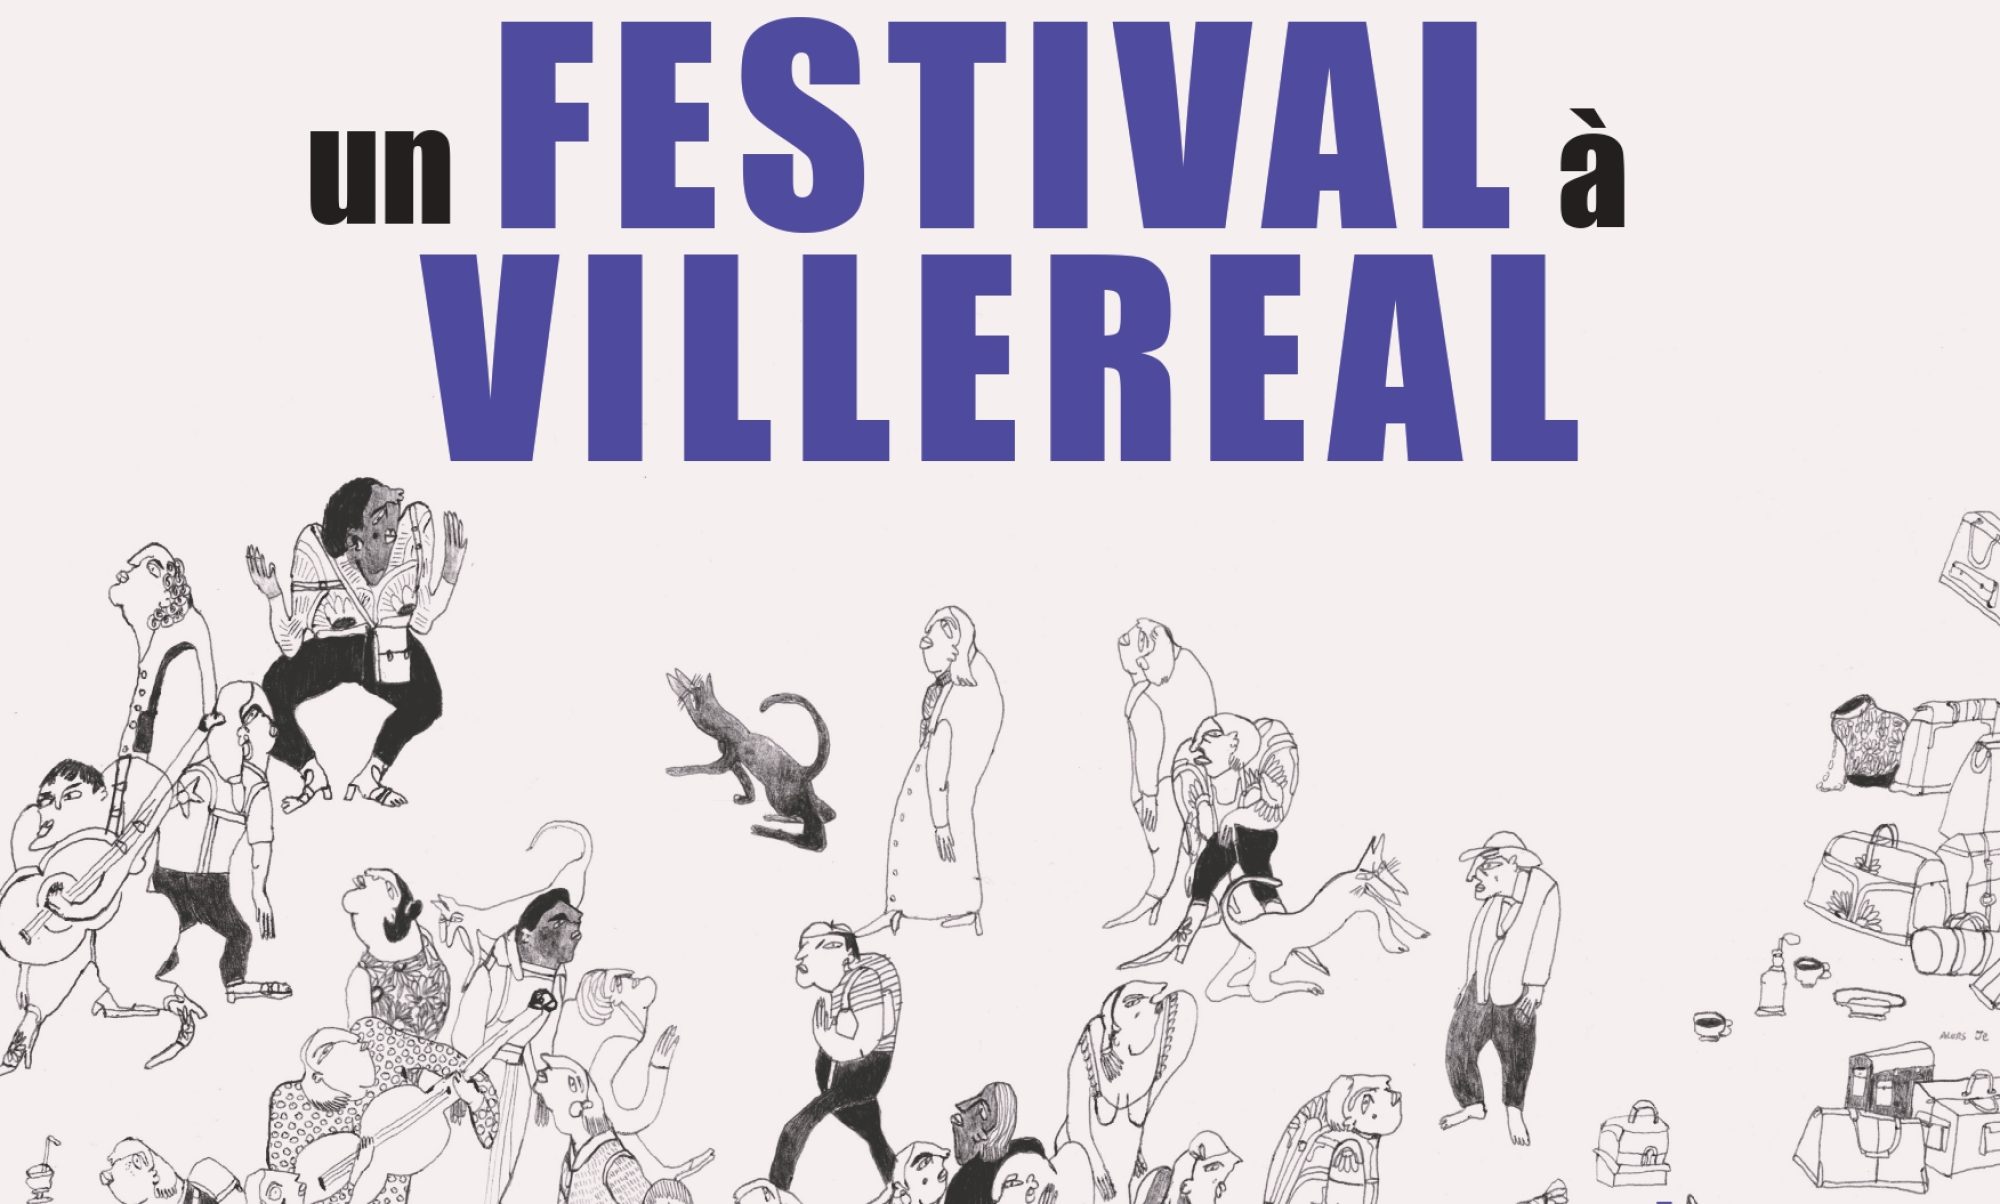 Un Festival à Villeréal